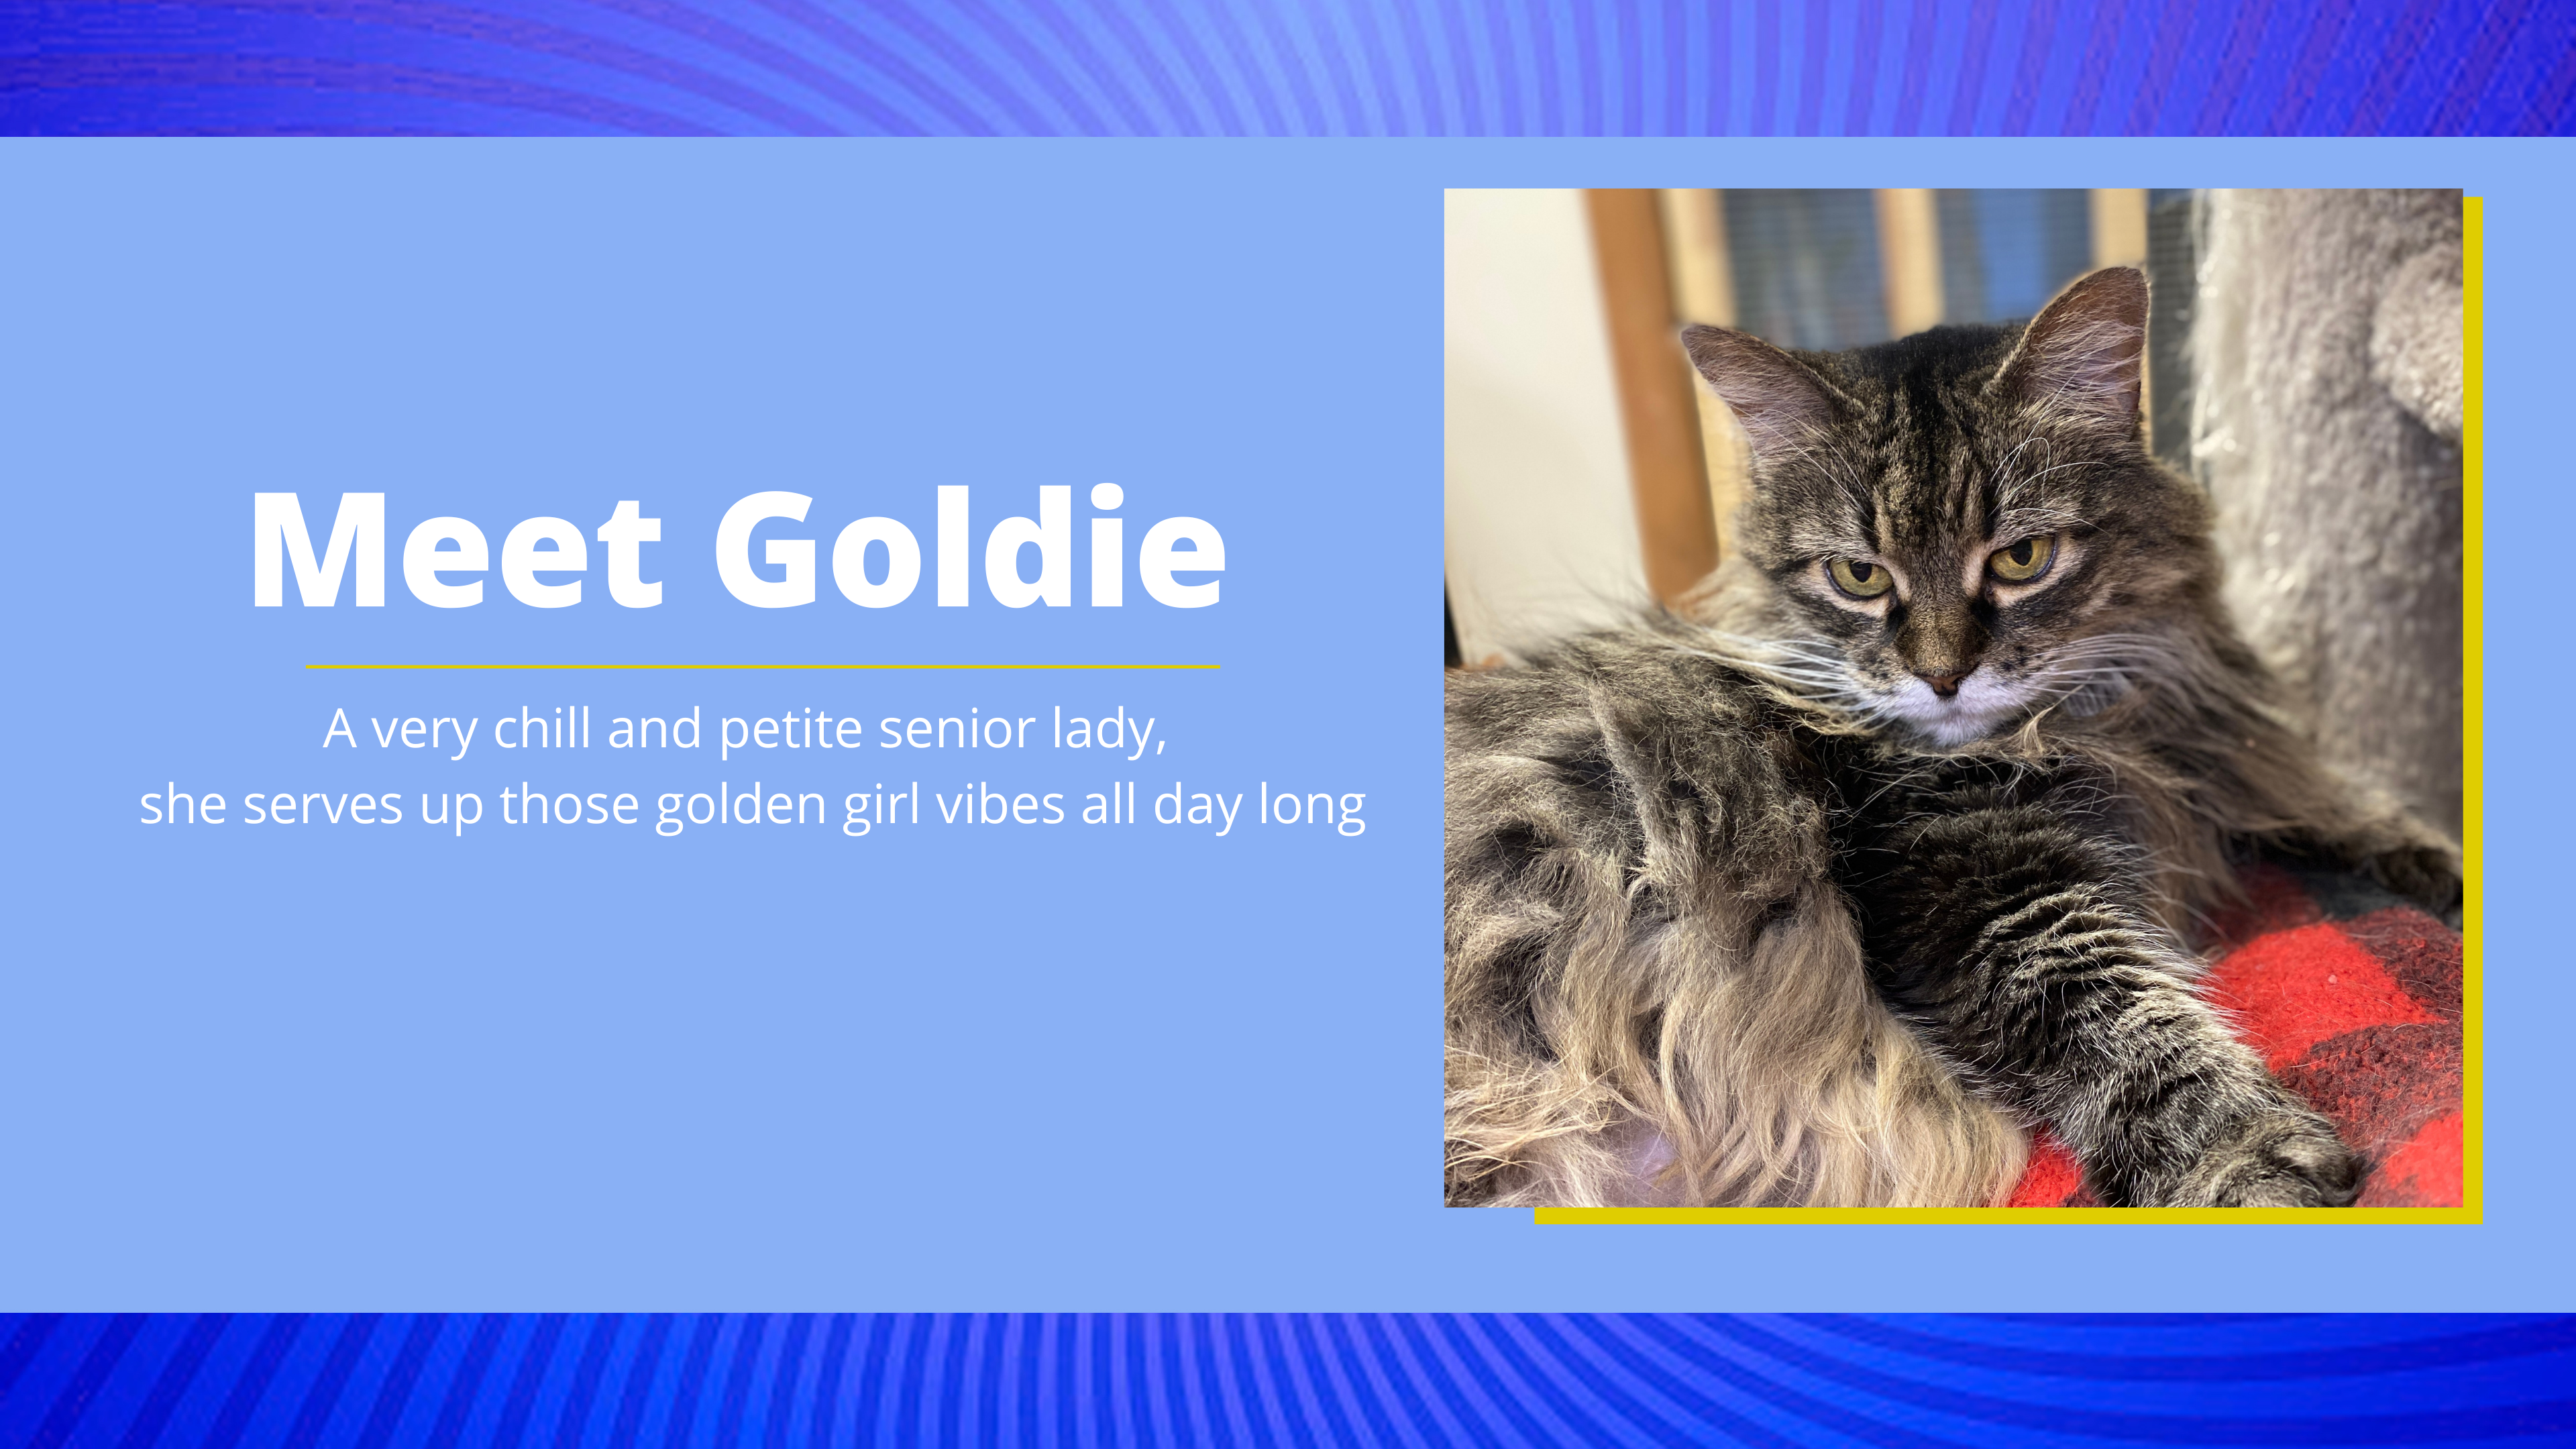 Meet Goldie